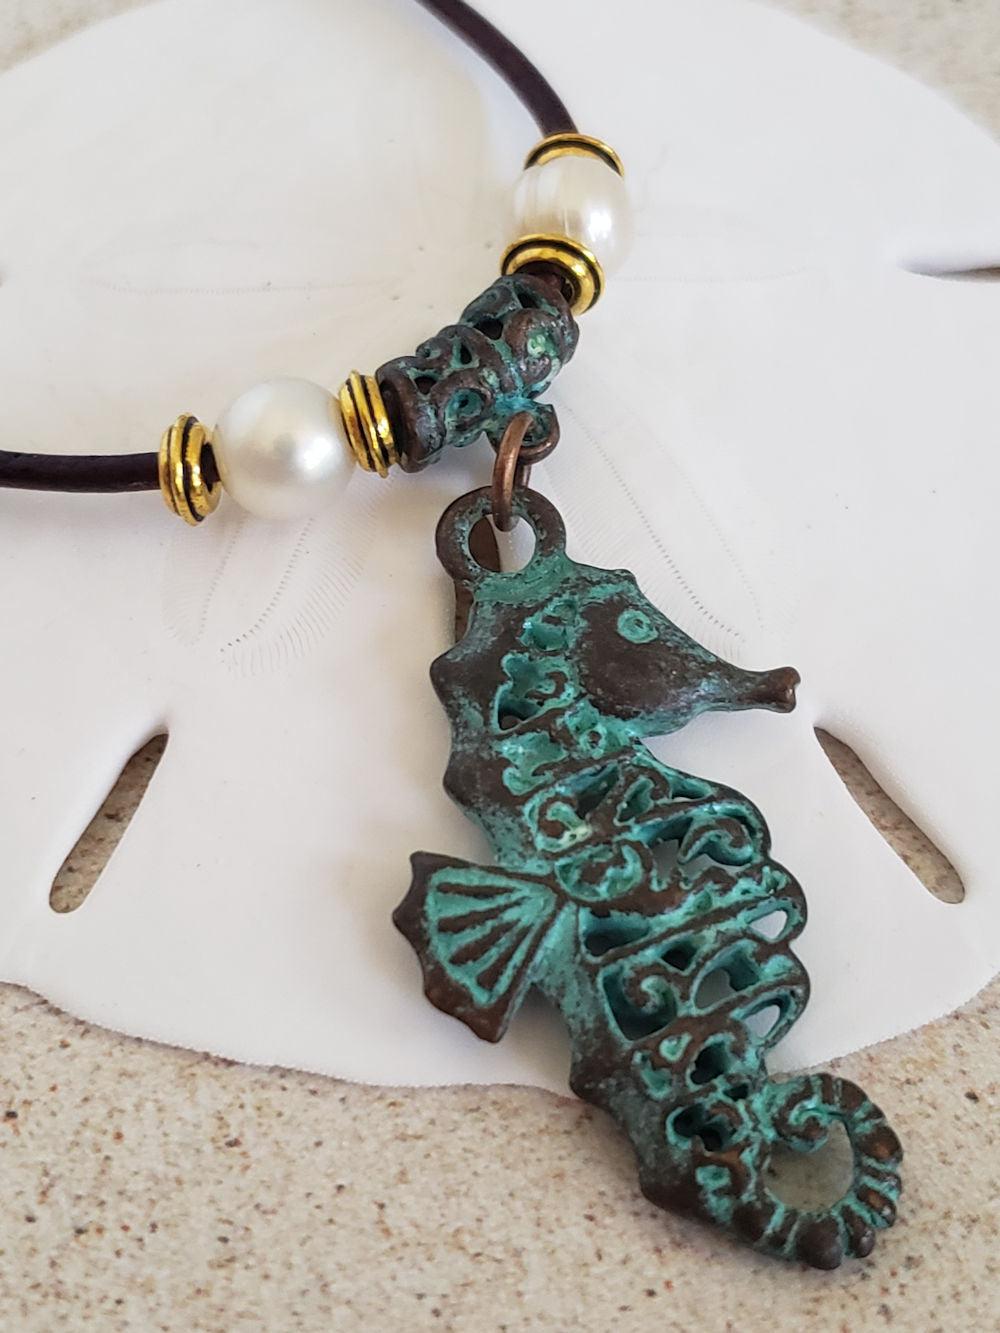 Seahorse Pendant Necklace- Antique Copper & Leather